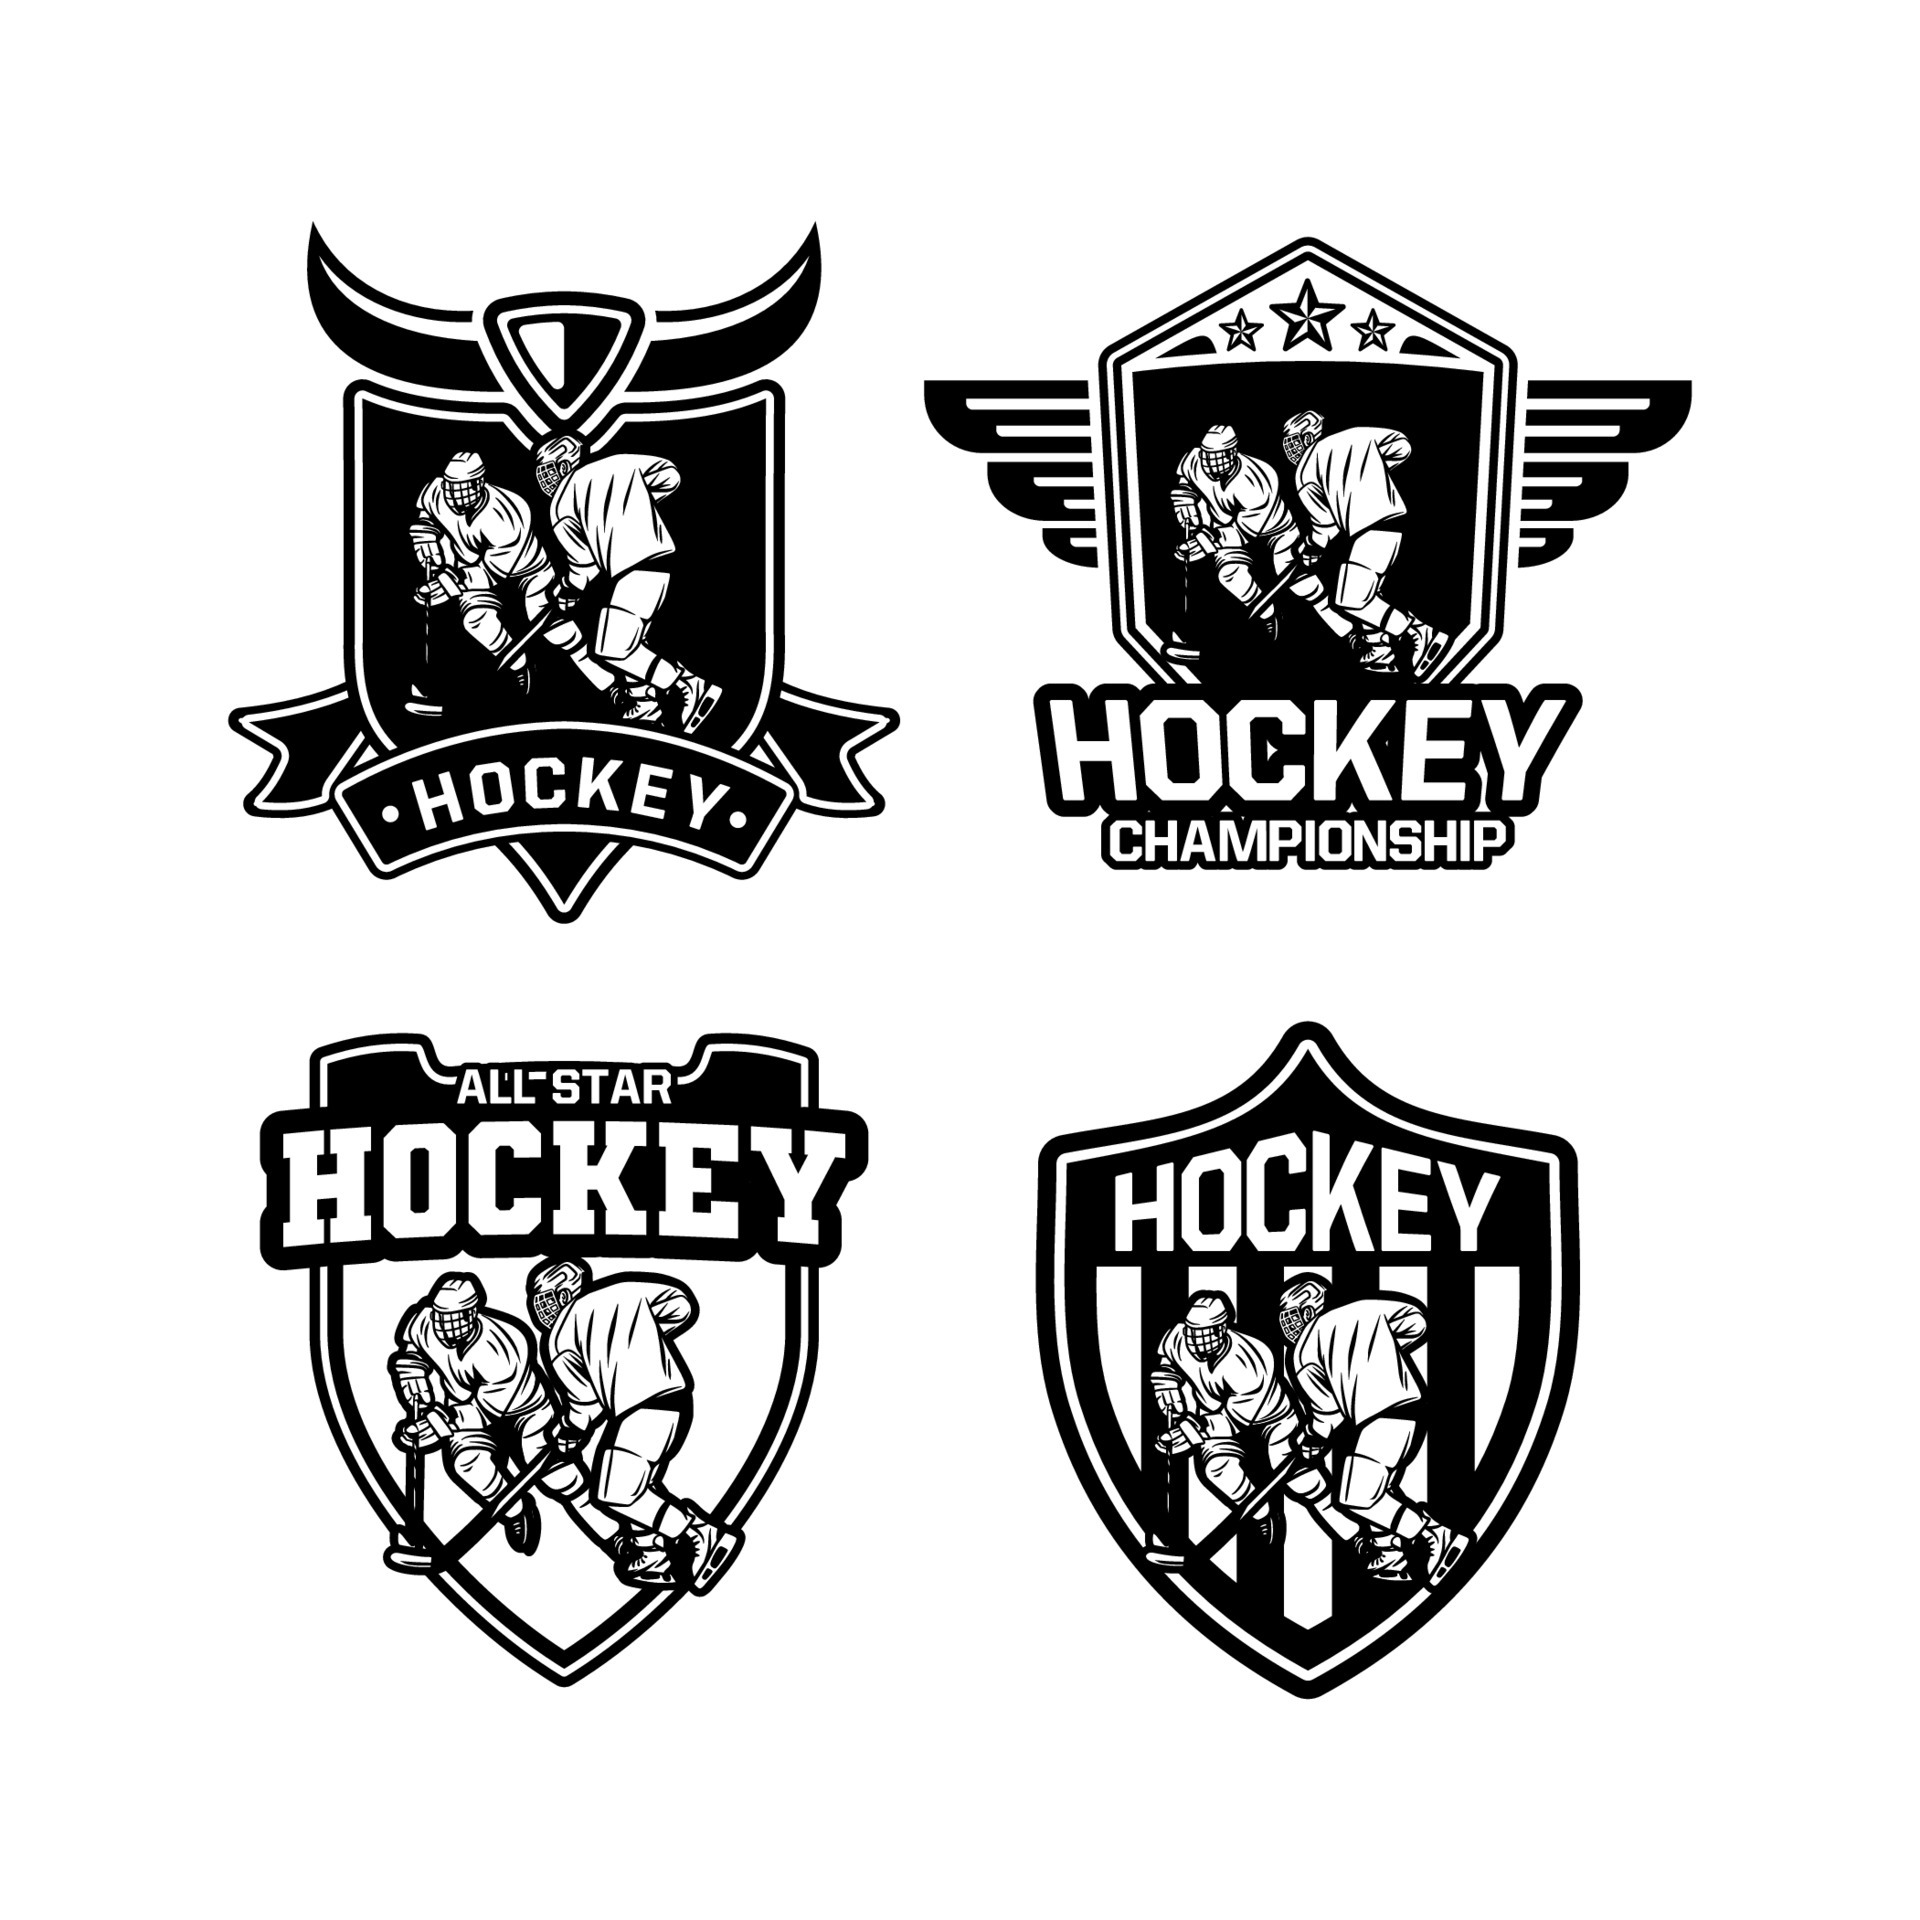 Bangladesh Het is de bedoeling dat verkouden worden schild logo ijshockey vector zwart-wit set 4448917 Vectorkunst bij Vecteezy